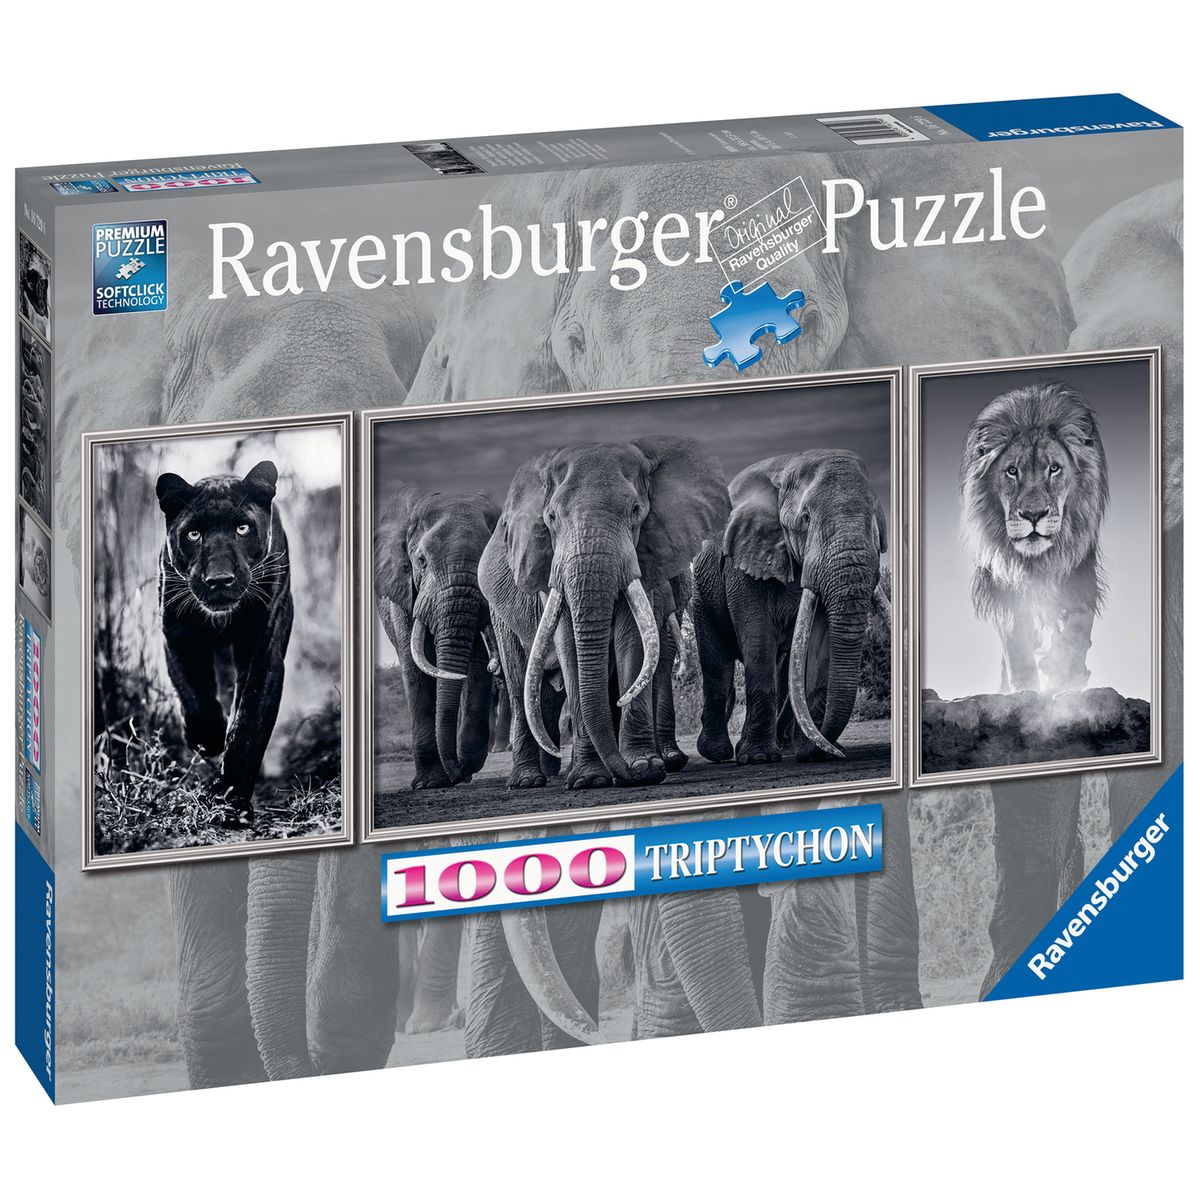 Ravensburger - Puzzle 250 pièces - Ladybug protège Paris - Miraculous